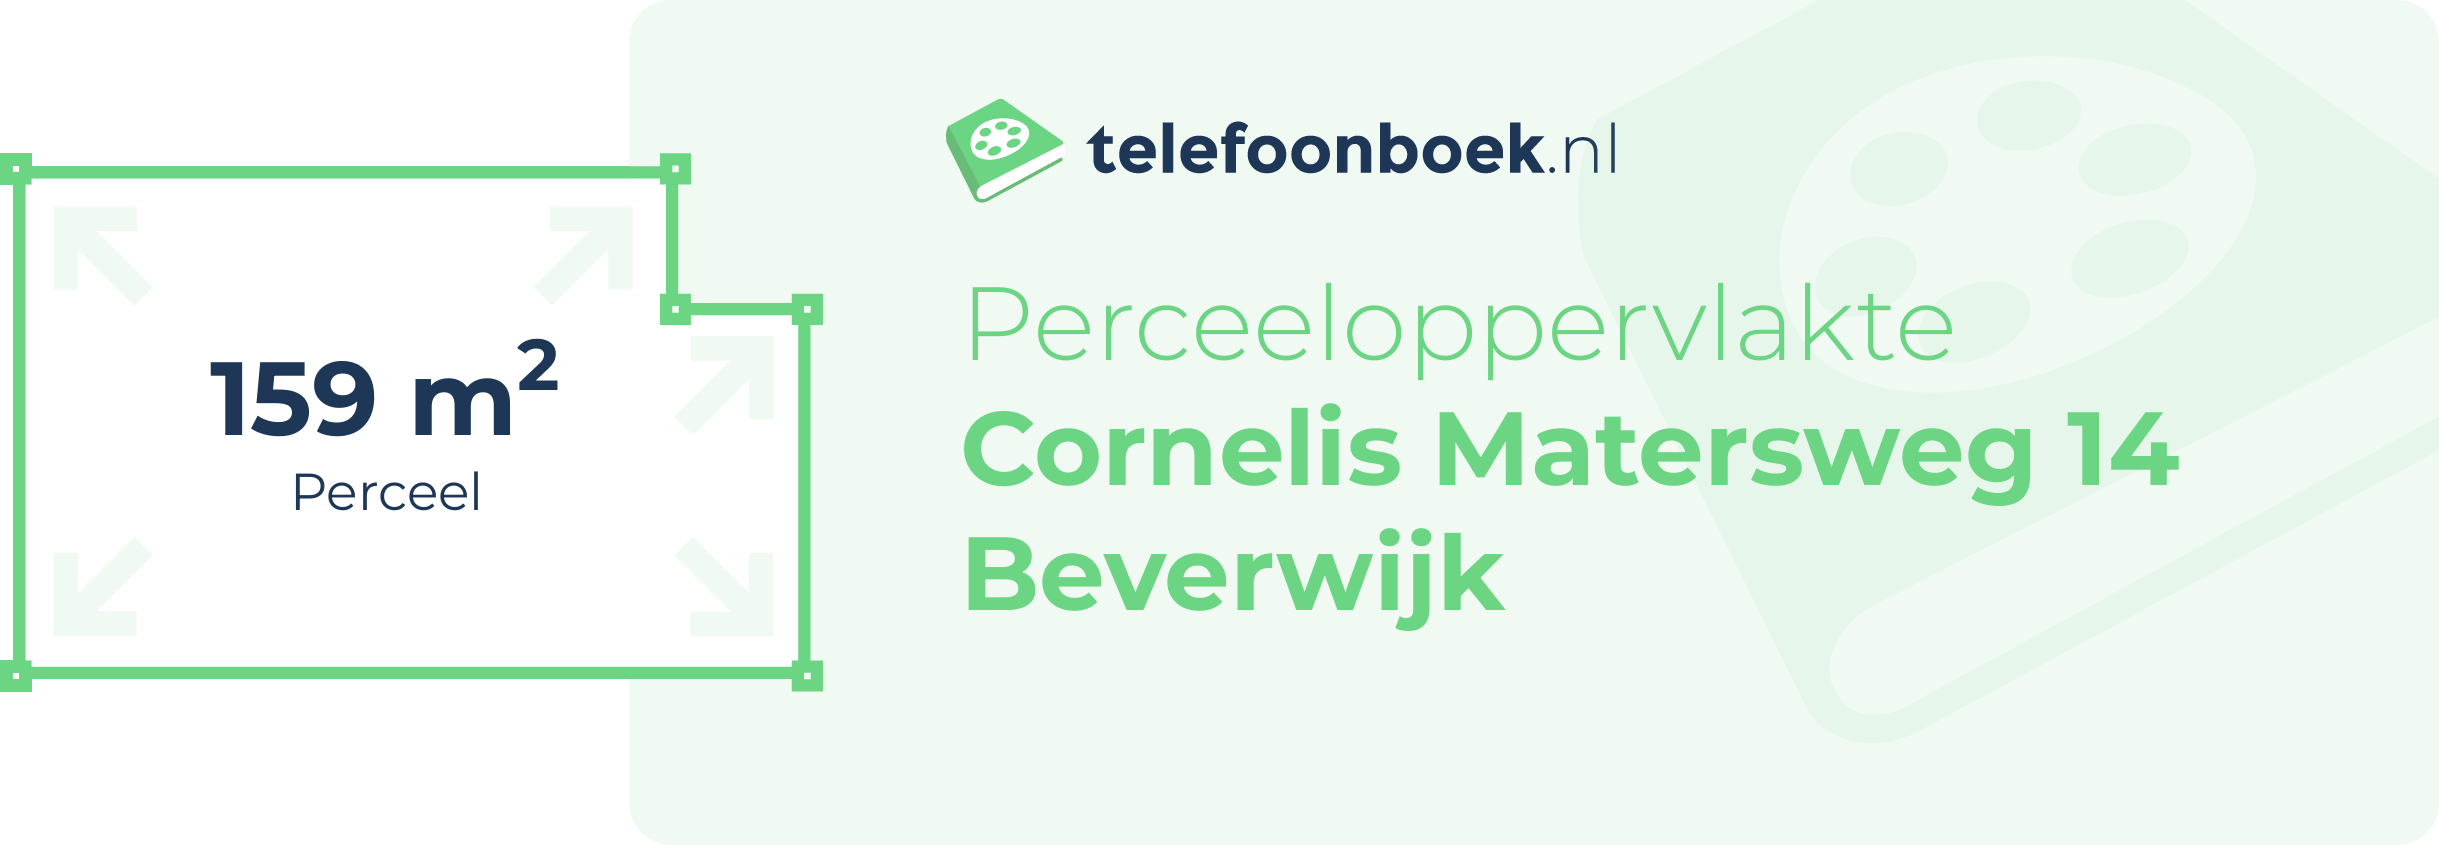 Perceeloppervlakte Cornelis Matersweg 14 Beverwijk